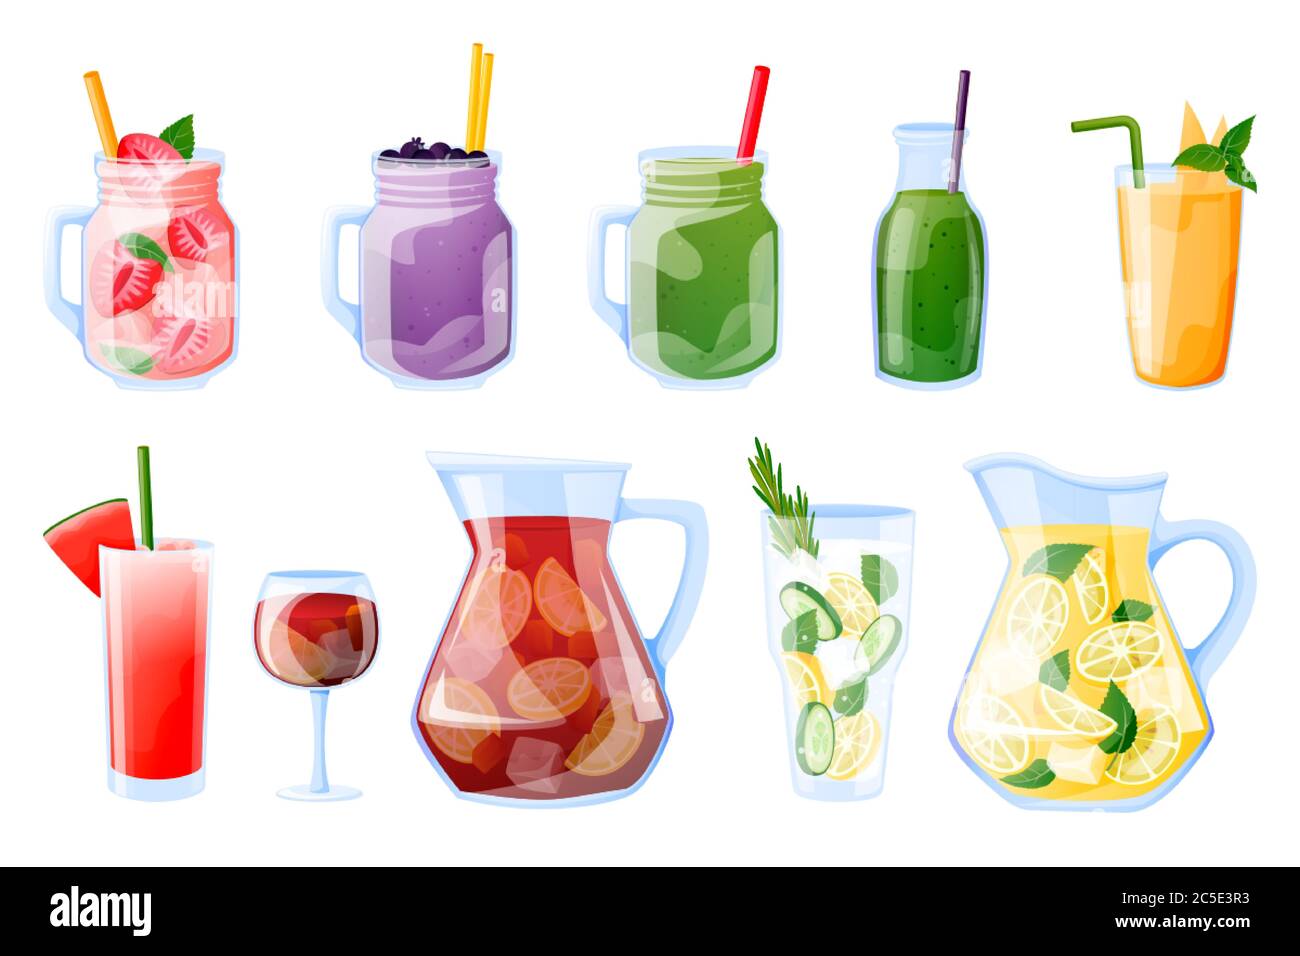 Colección de bebidas tropicales de verano, aisladas sobre fondo blanco. Ilustración de dibujos animados vectoriales. Batido, jugo fresco, sangría, gla de limonada Ilustración del Vector